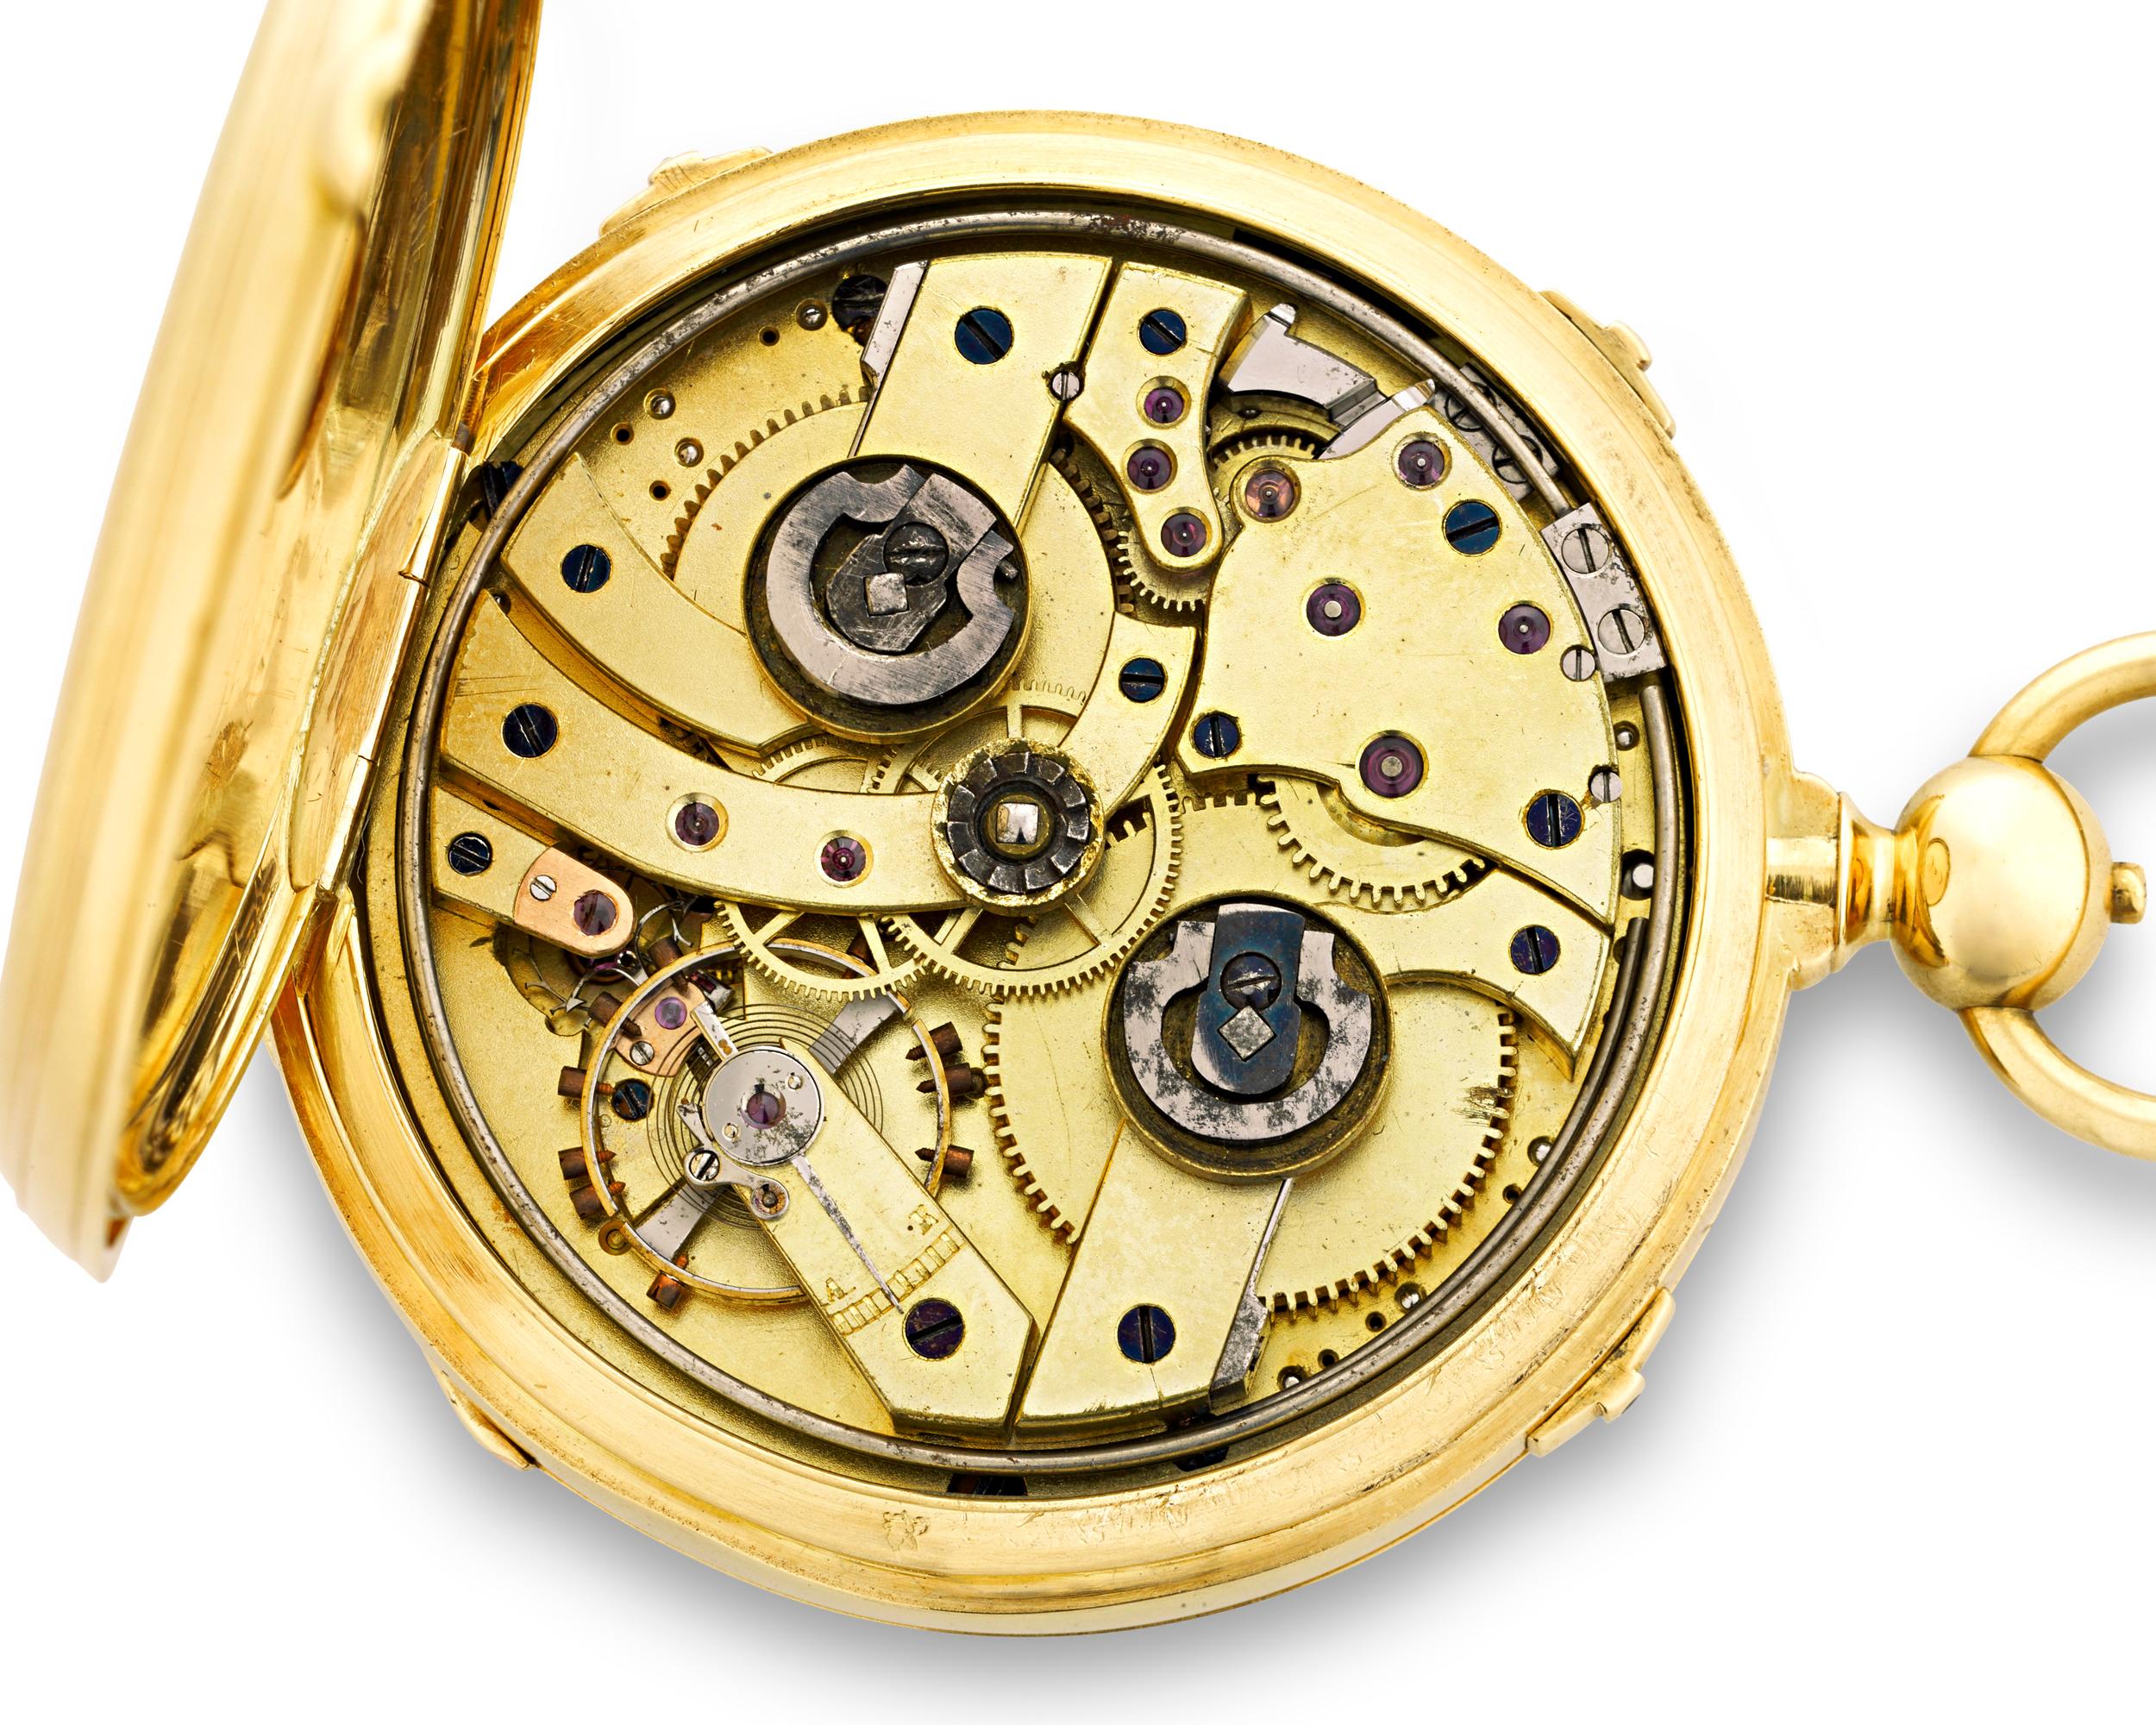 Cette rare montre de poche à répétition des quarts d'heure de la Grande Sonnerie, fabriquée par la maison suisse Montandon, est une œuvre horlogère impressionnante, aussi belle que fonctionnelle. La grande sonnerie sonne automatiquement les heures